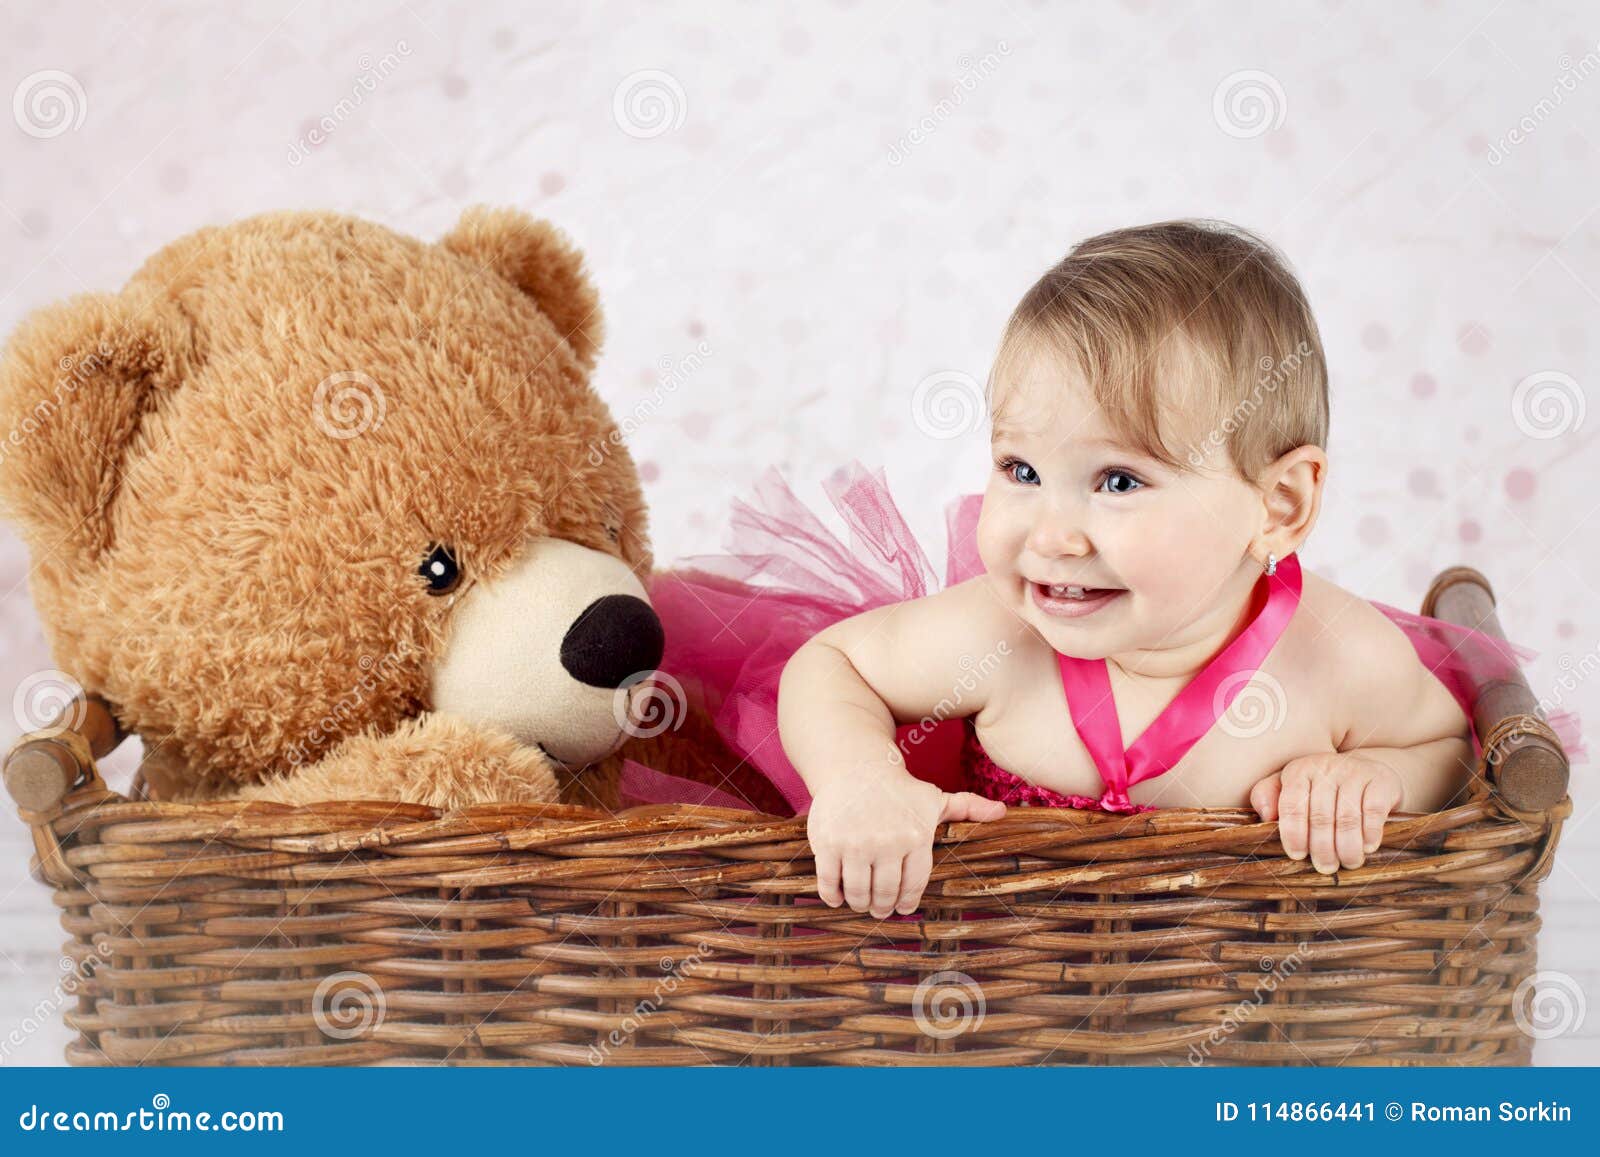 Beautiful Little Girl with Big Teddy Bear in the Wicker Basket ...